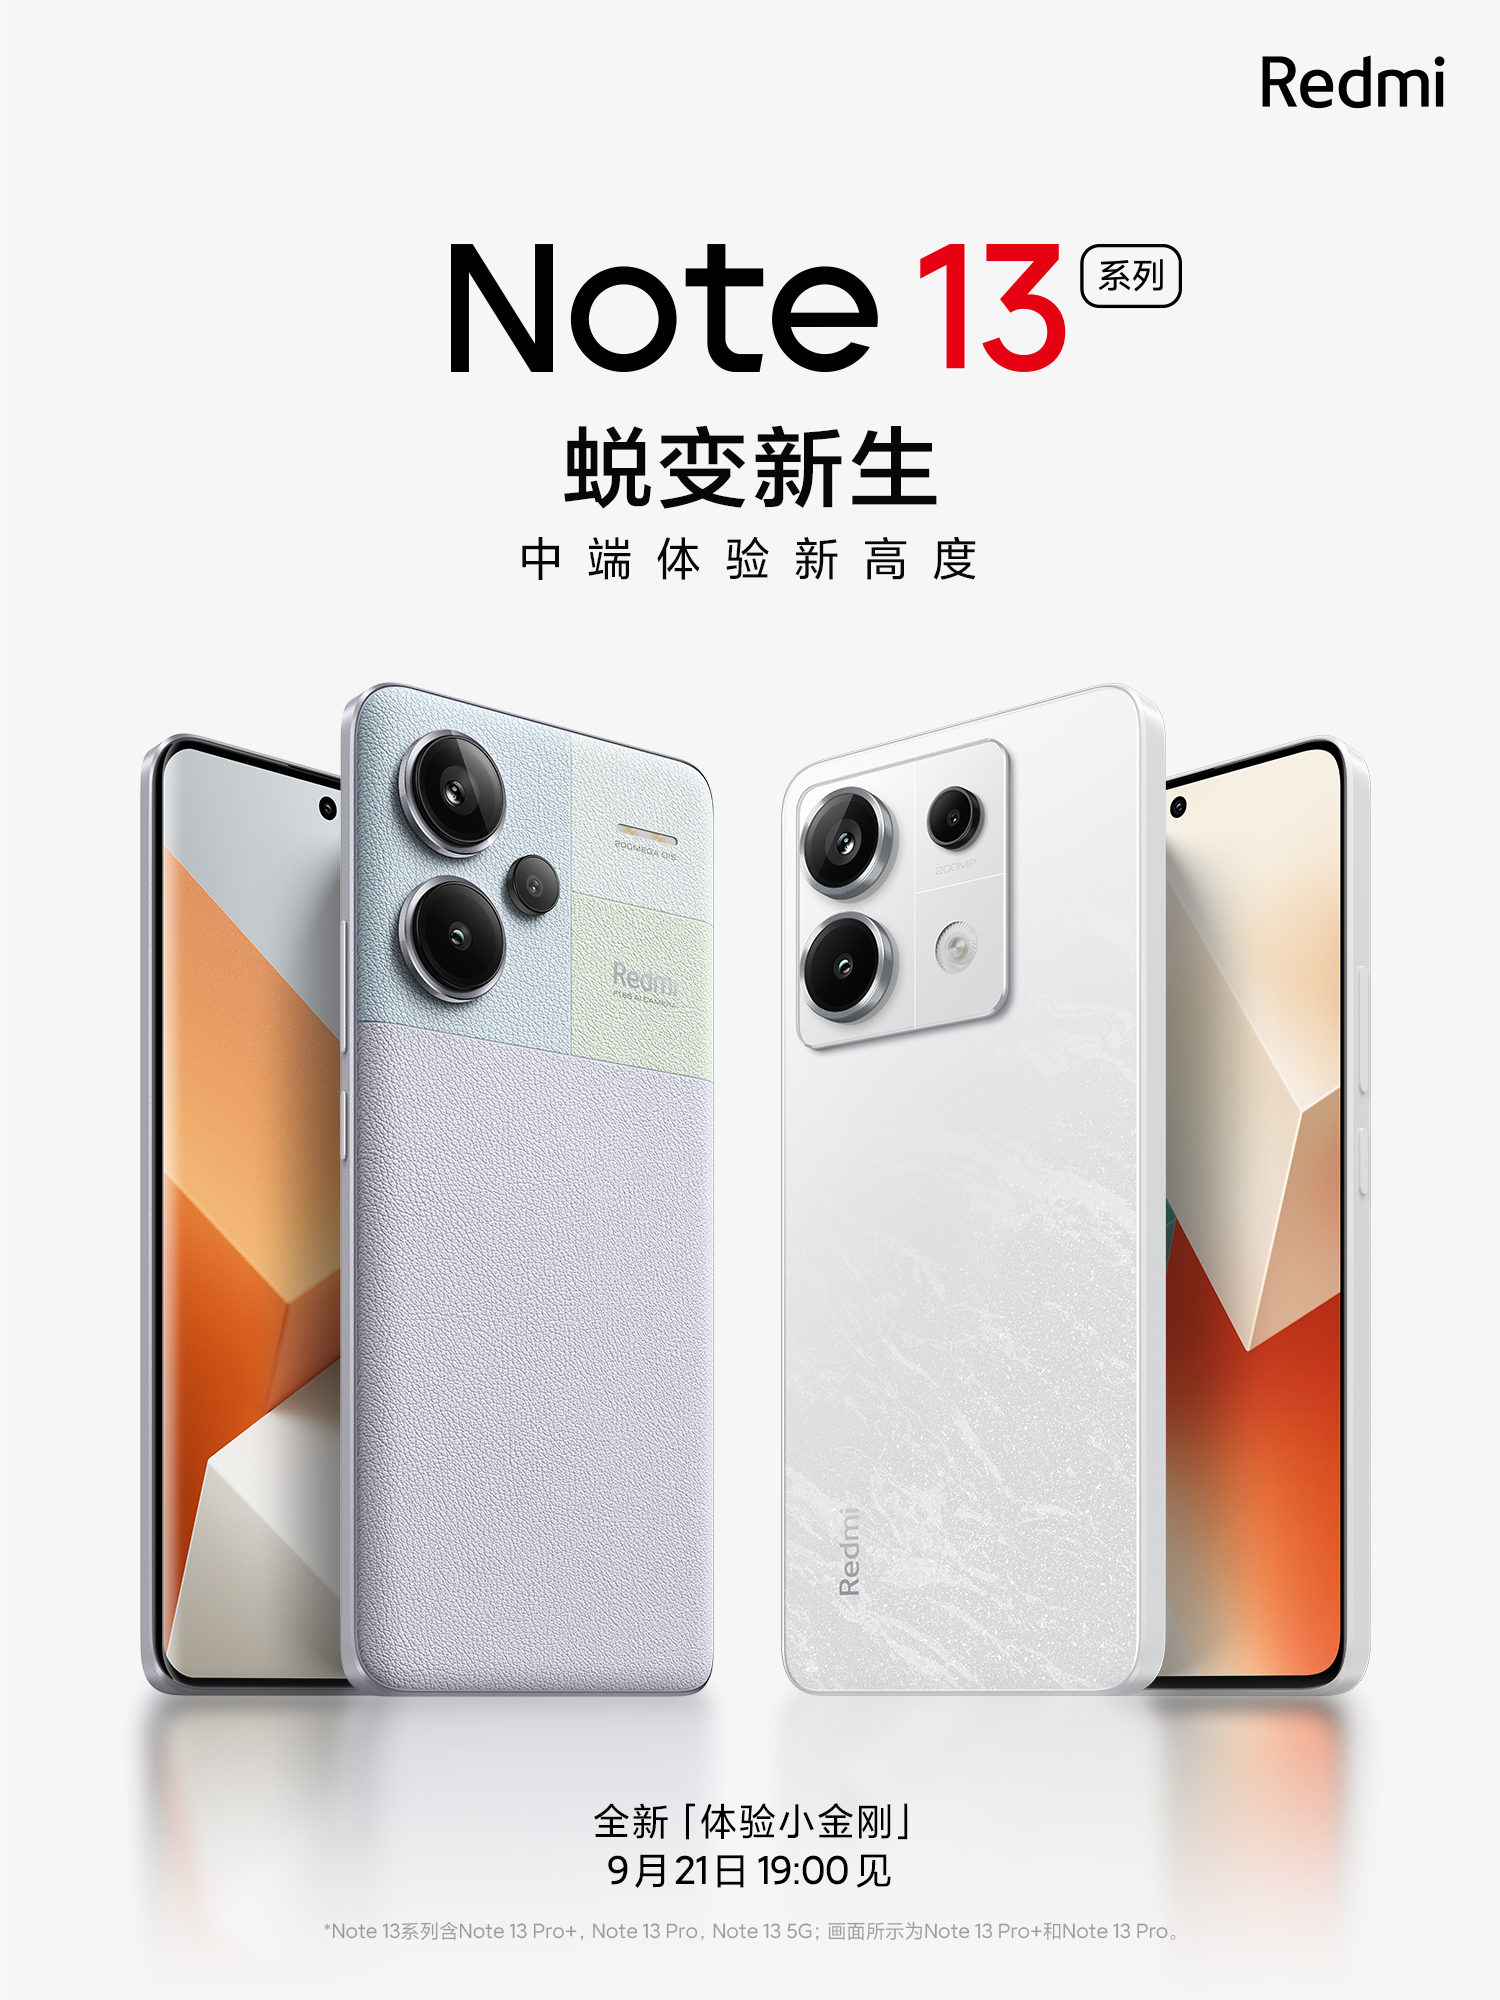 Los próximos superventas de Xiaomi se han filtrado: así serán los Redmi  Note 13 Pro 4G